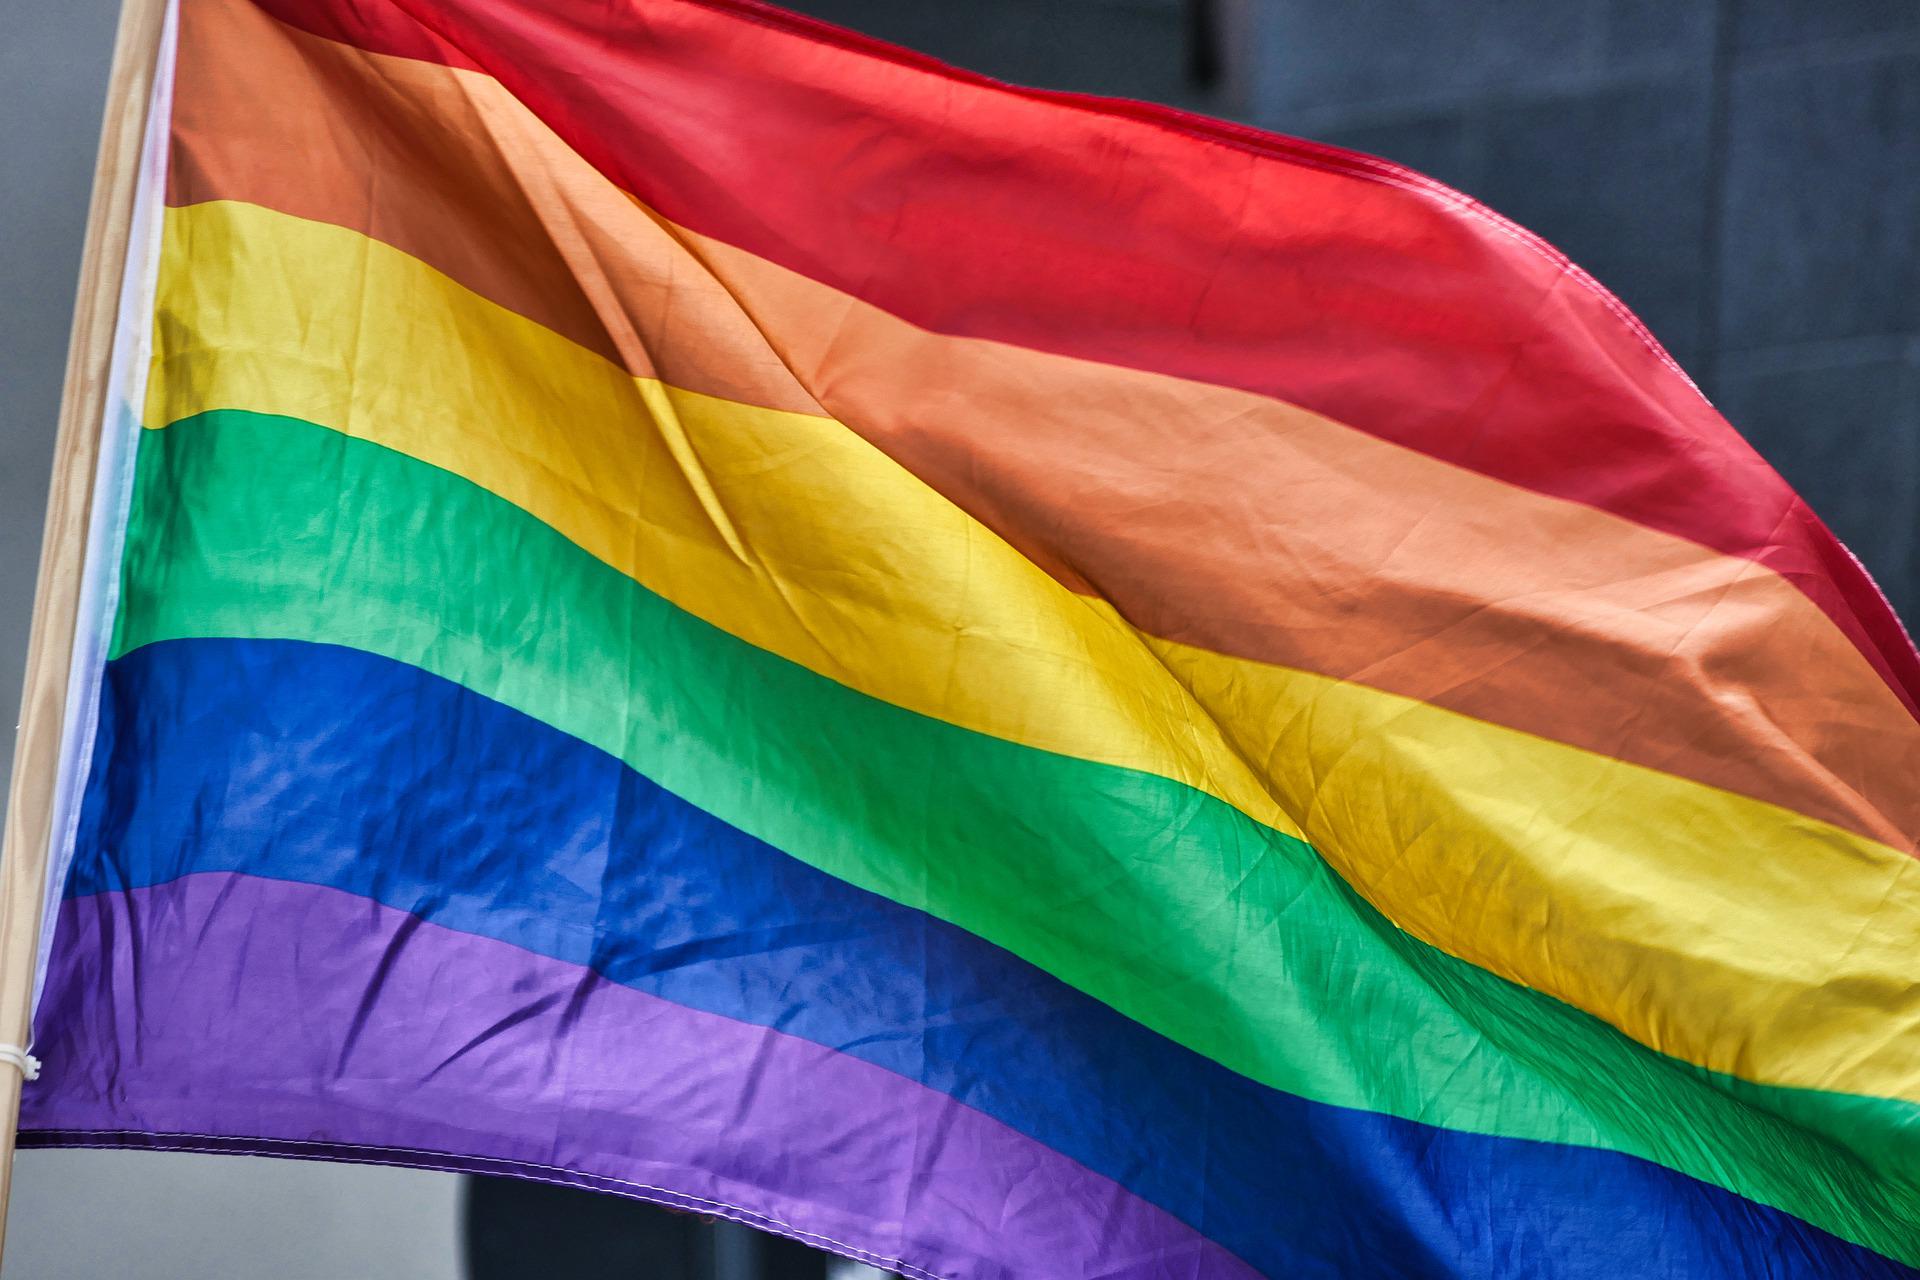 "Распространение разврата на Земле": ЛГБТ-активисток приговорили к смертной казни